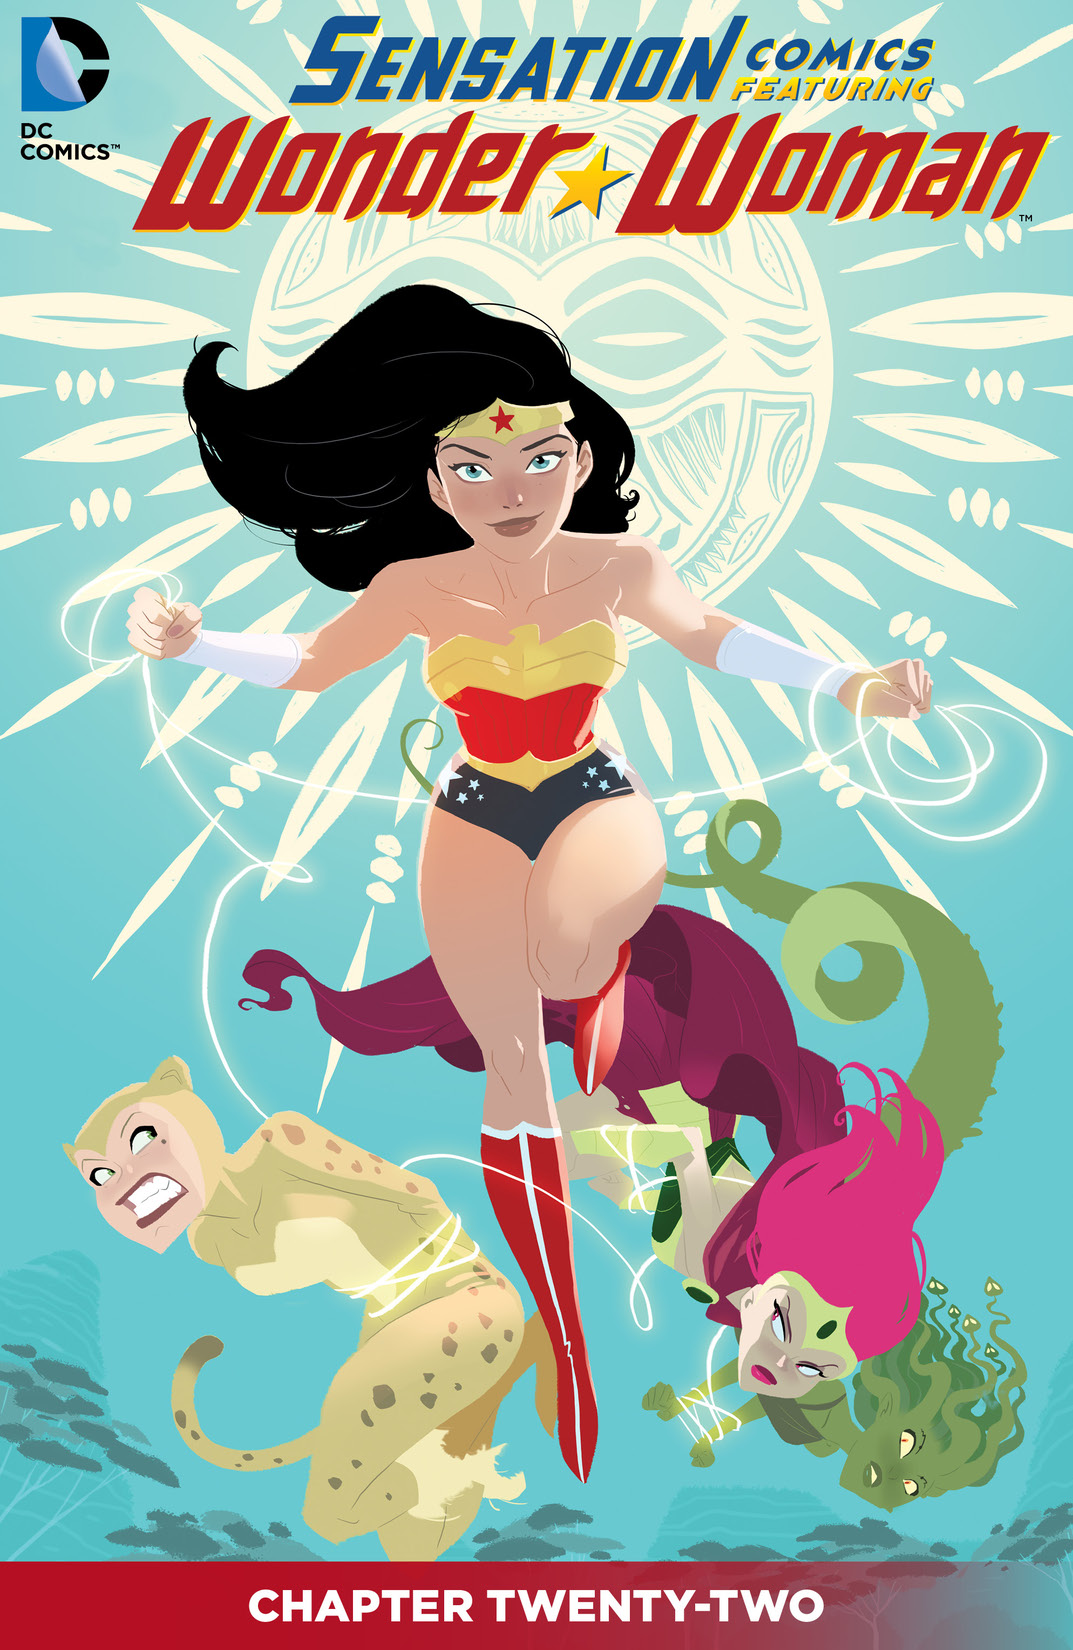 Sensation Comics Featuring Wonder Woman #22 preview images